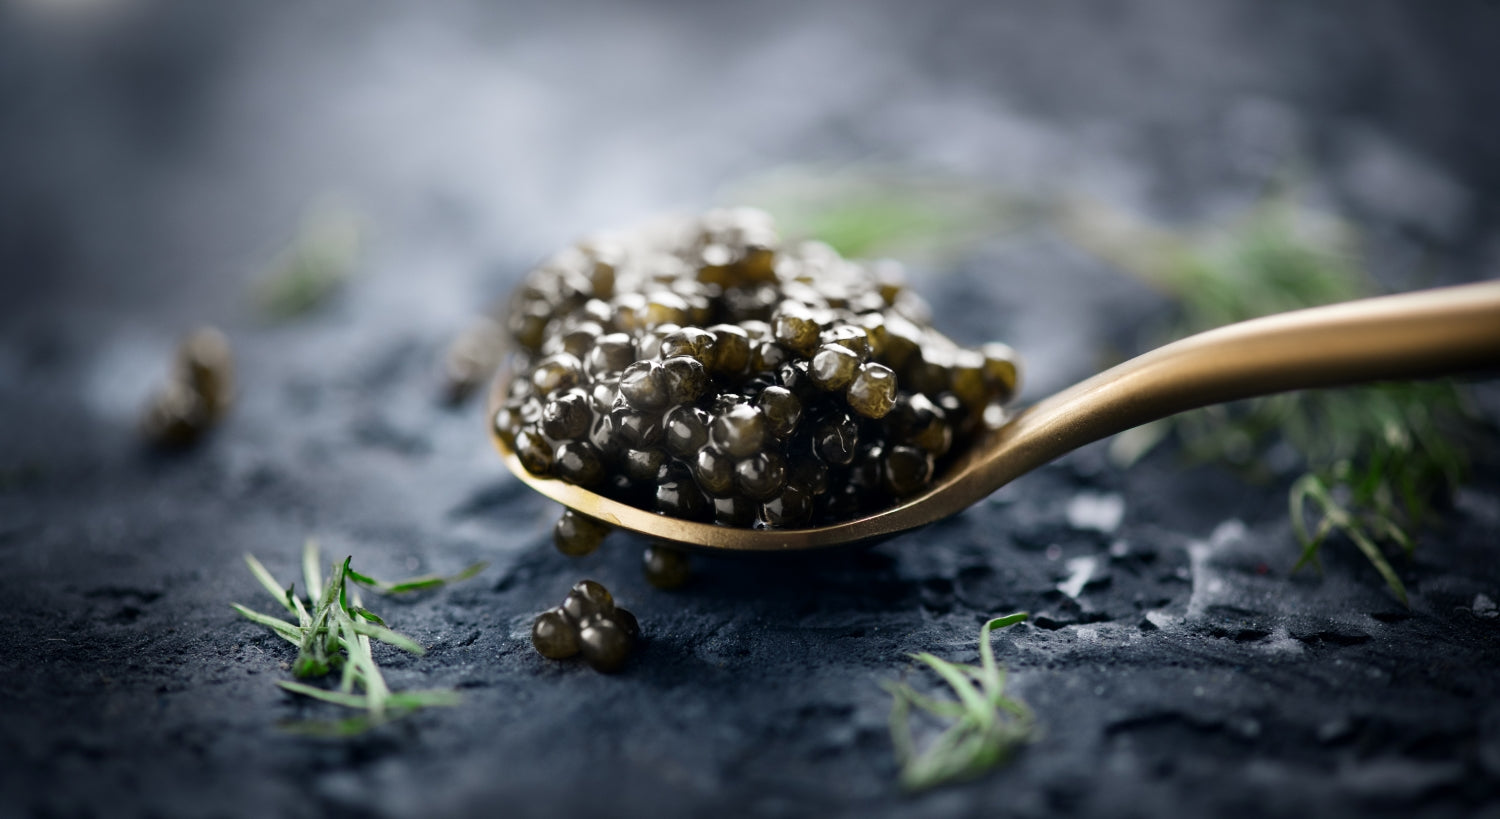 Caviar de esturión spherika en cuchara